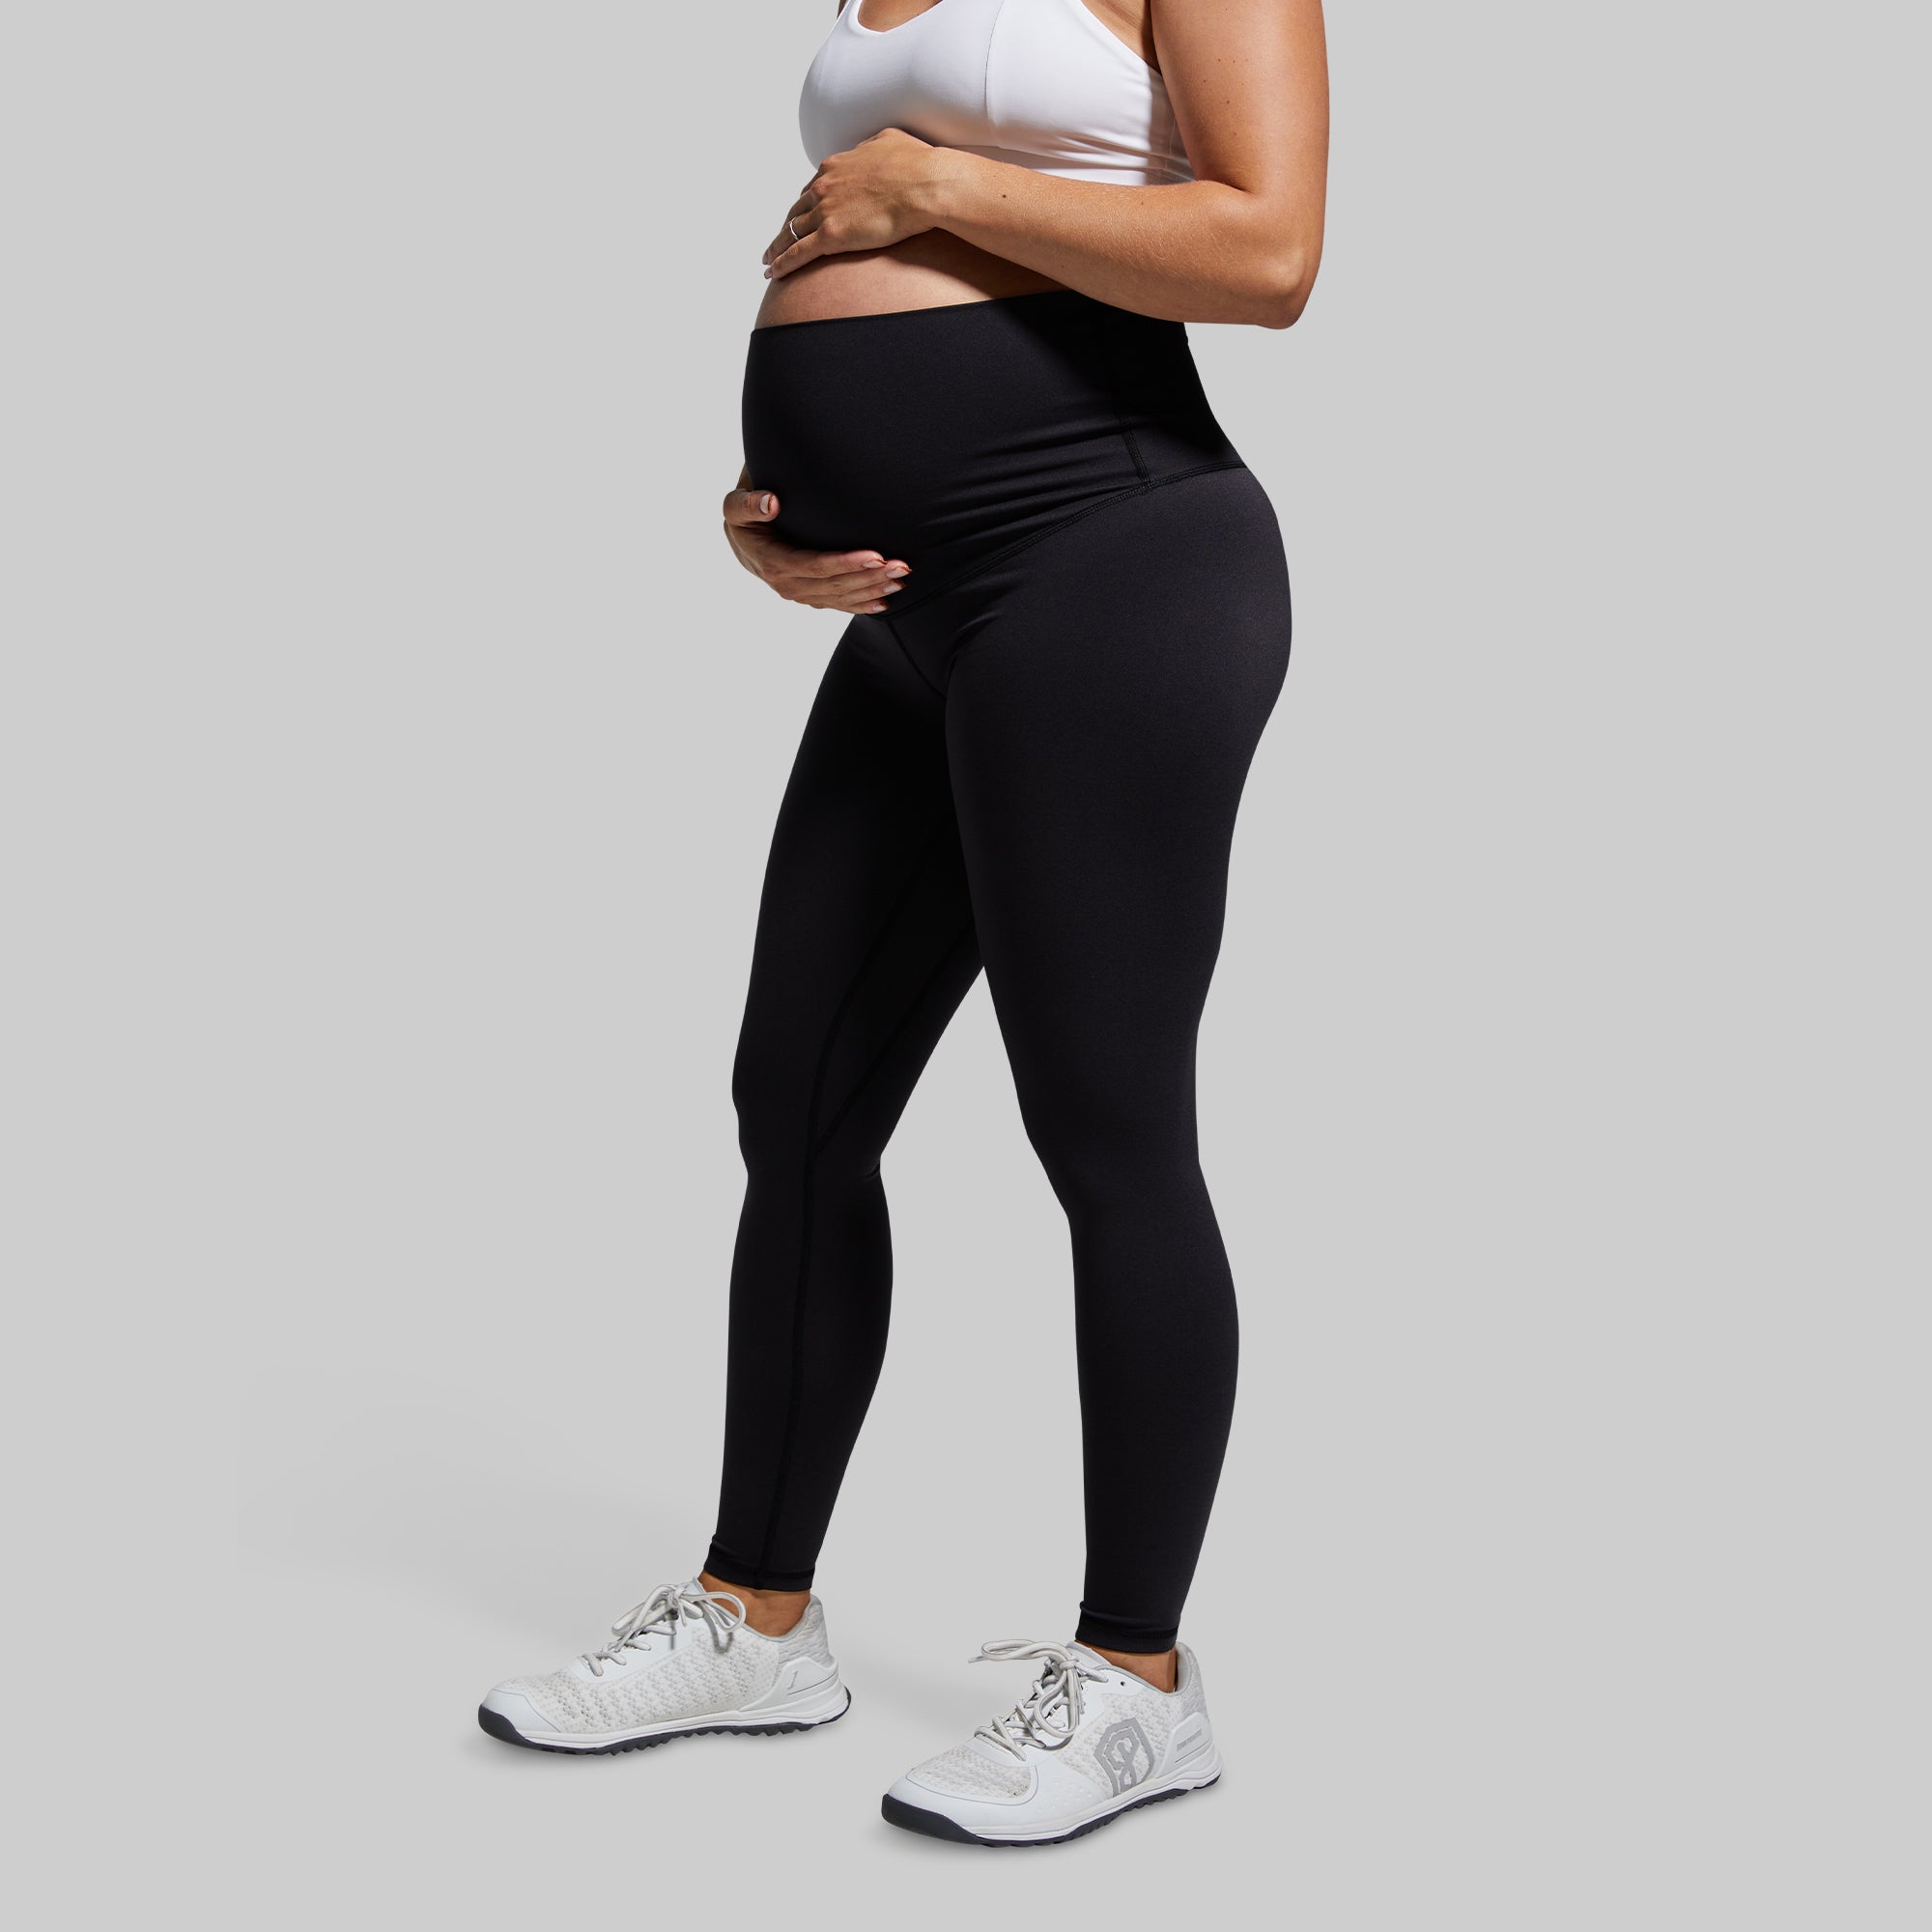 Black Leggings, Maternity, Full Length